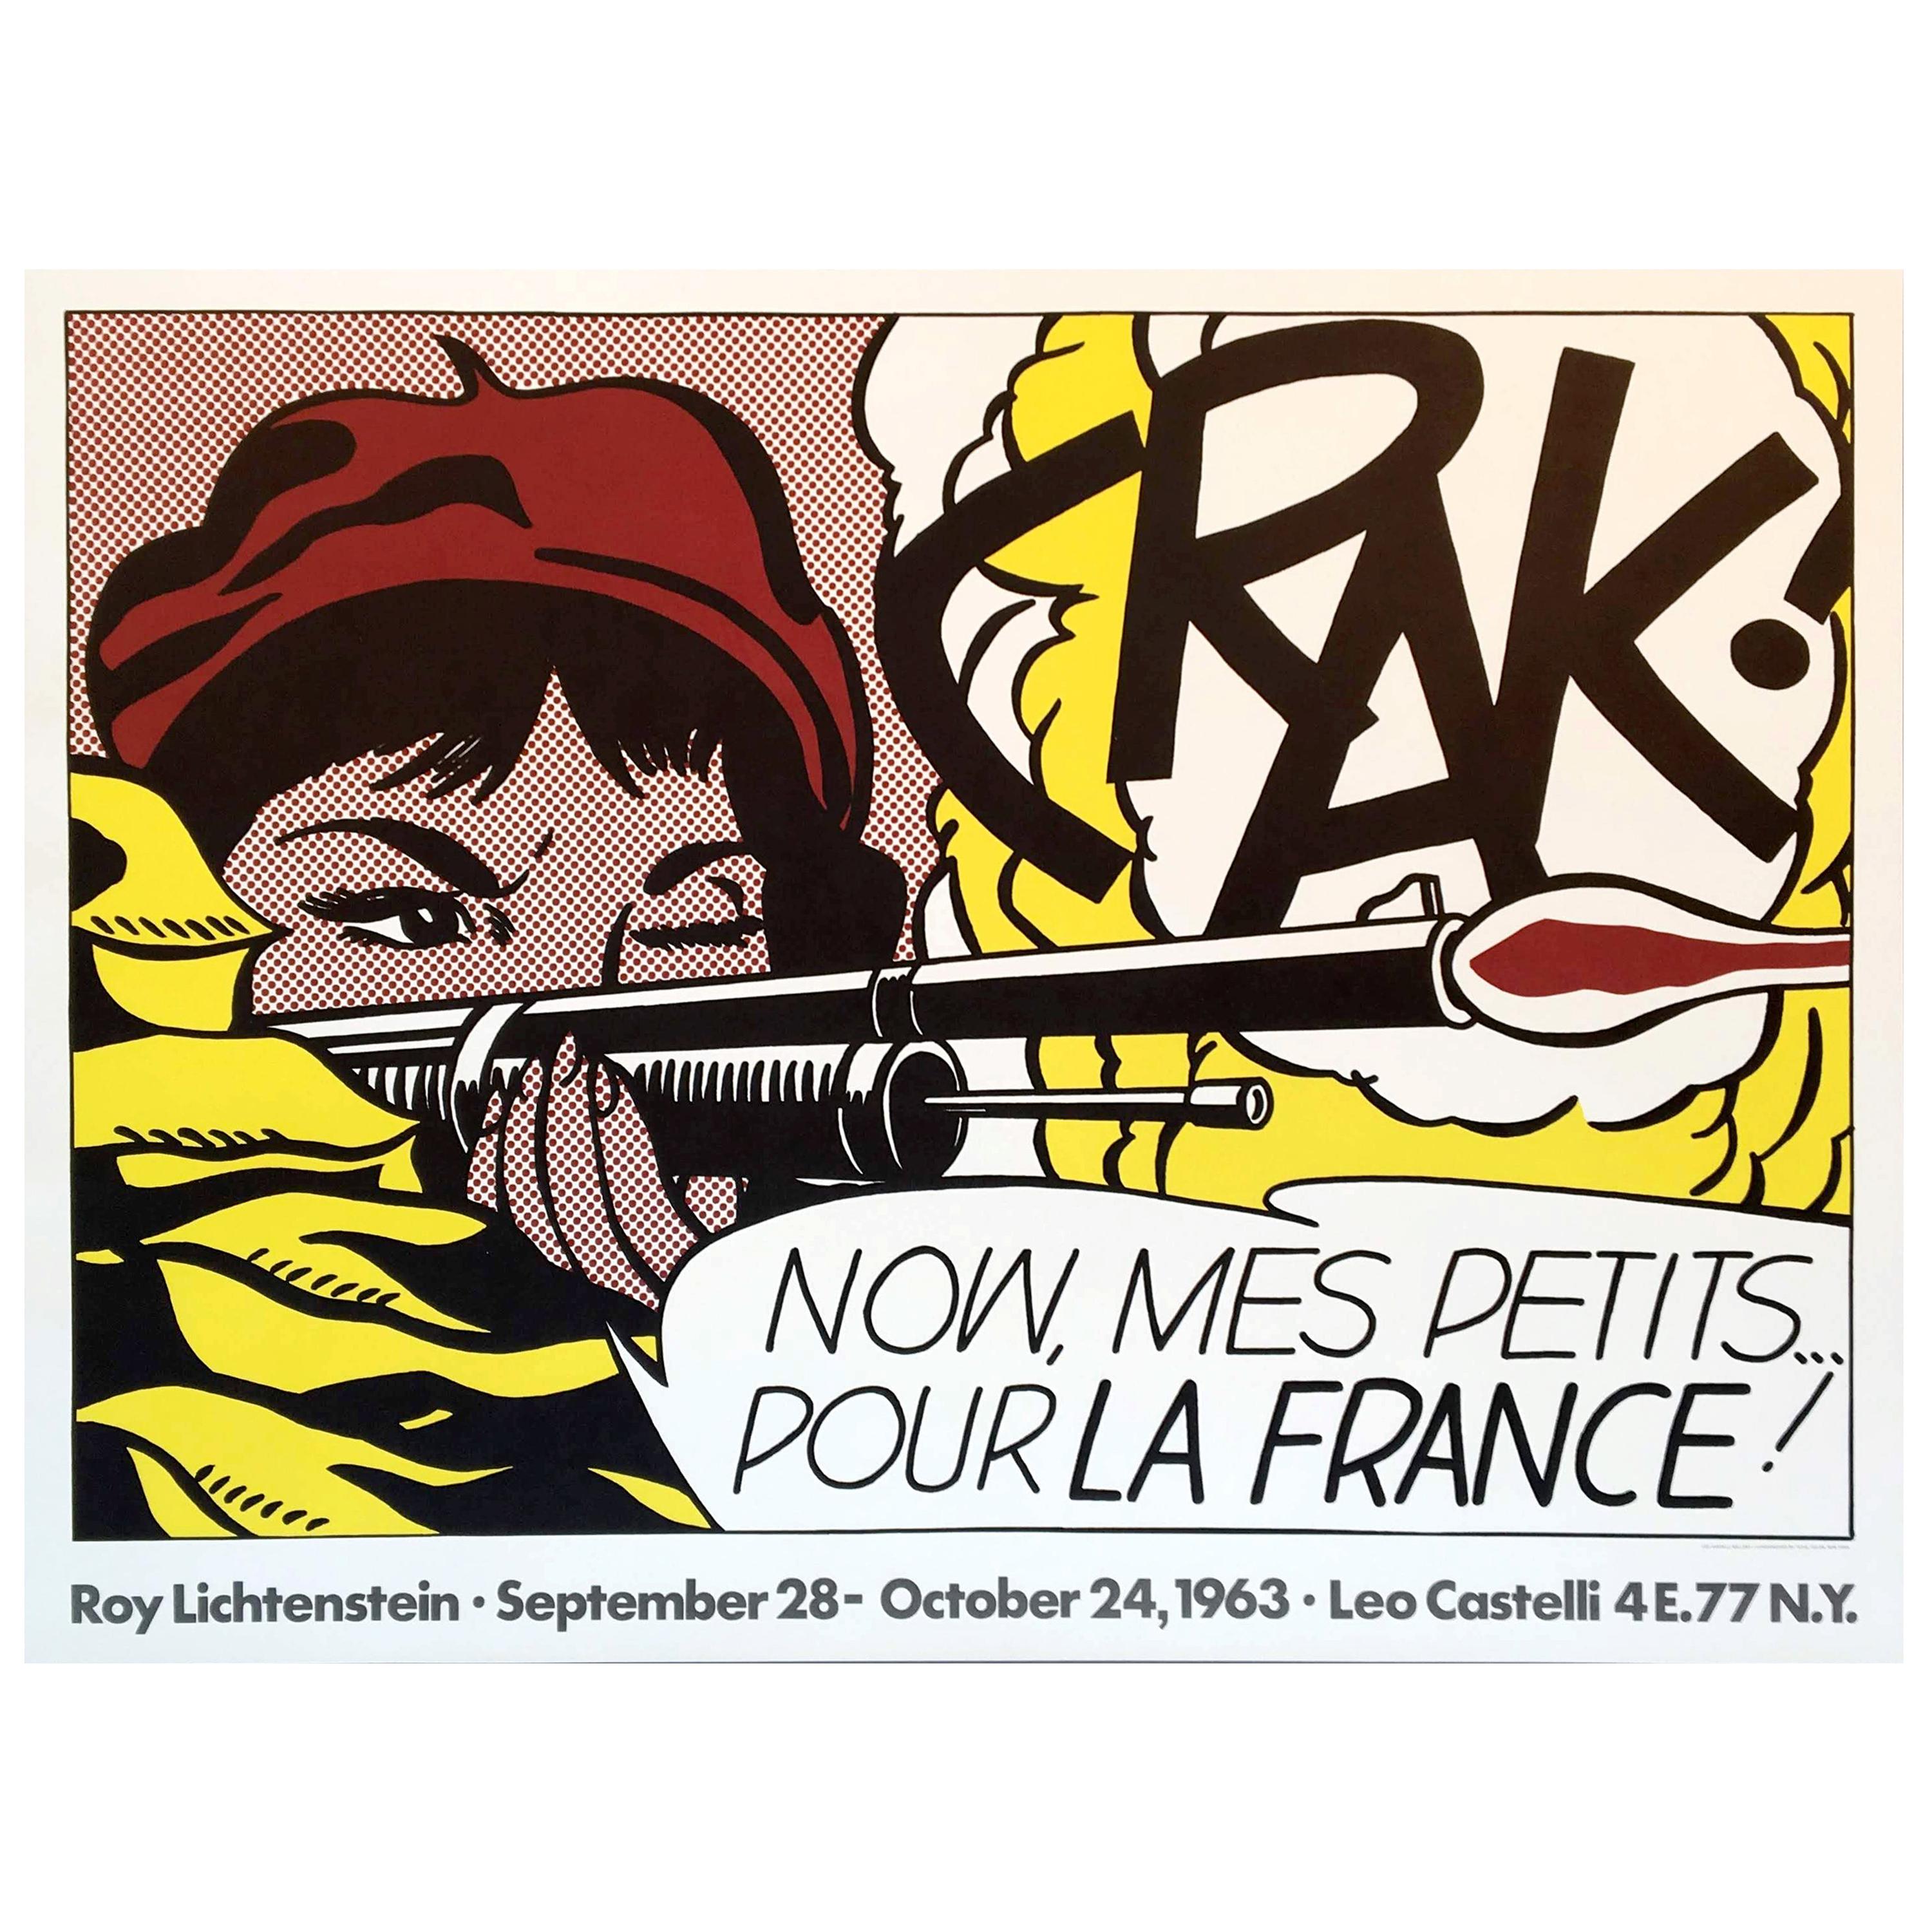 Roy Lichtenstein 'Crak!' Rare Original 1963 Poster Print on Fine Wove Paper For Sale